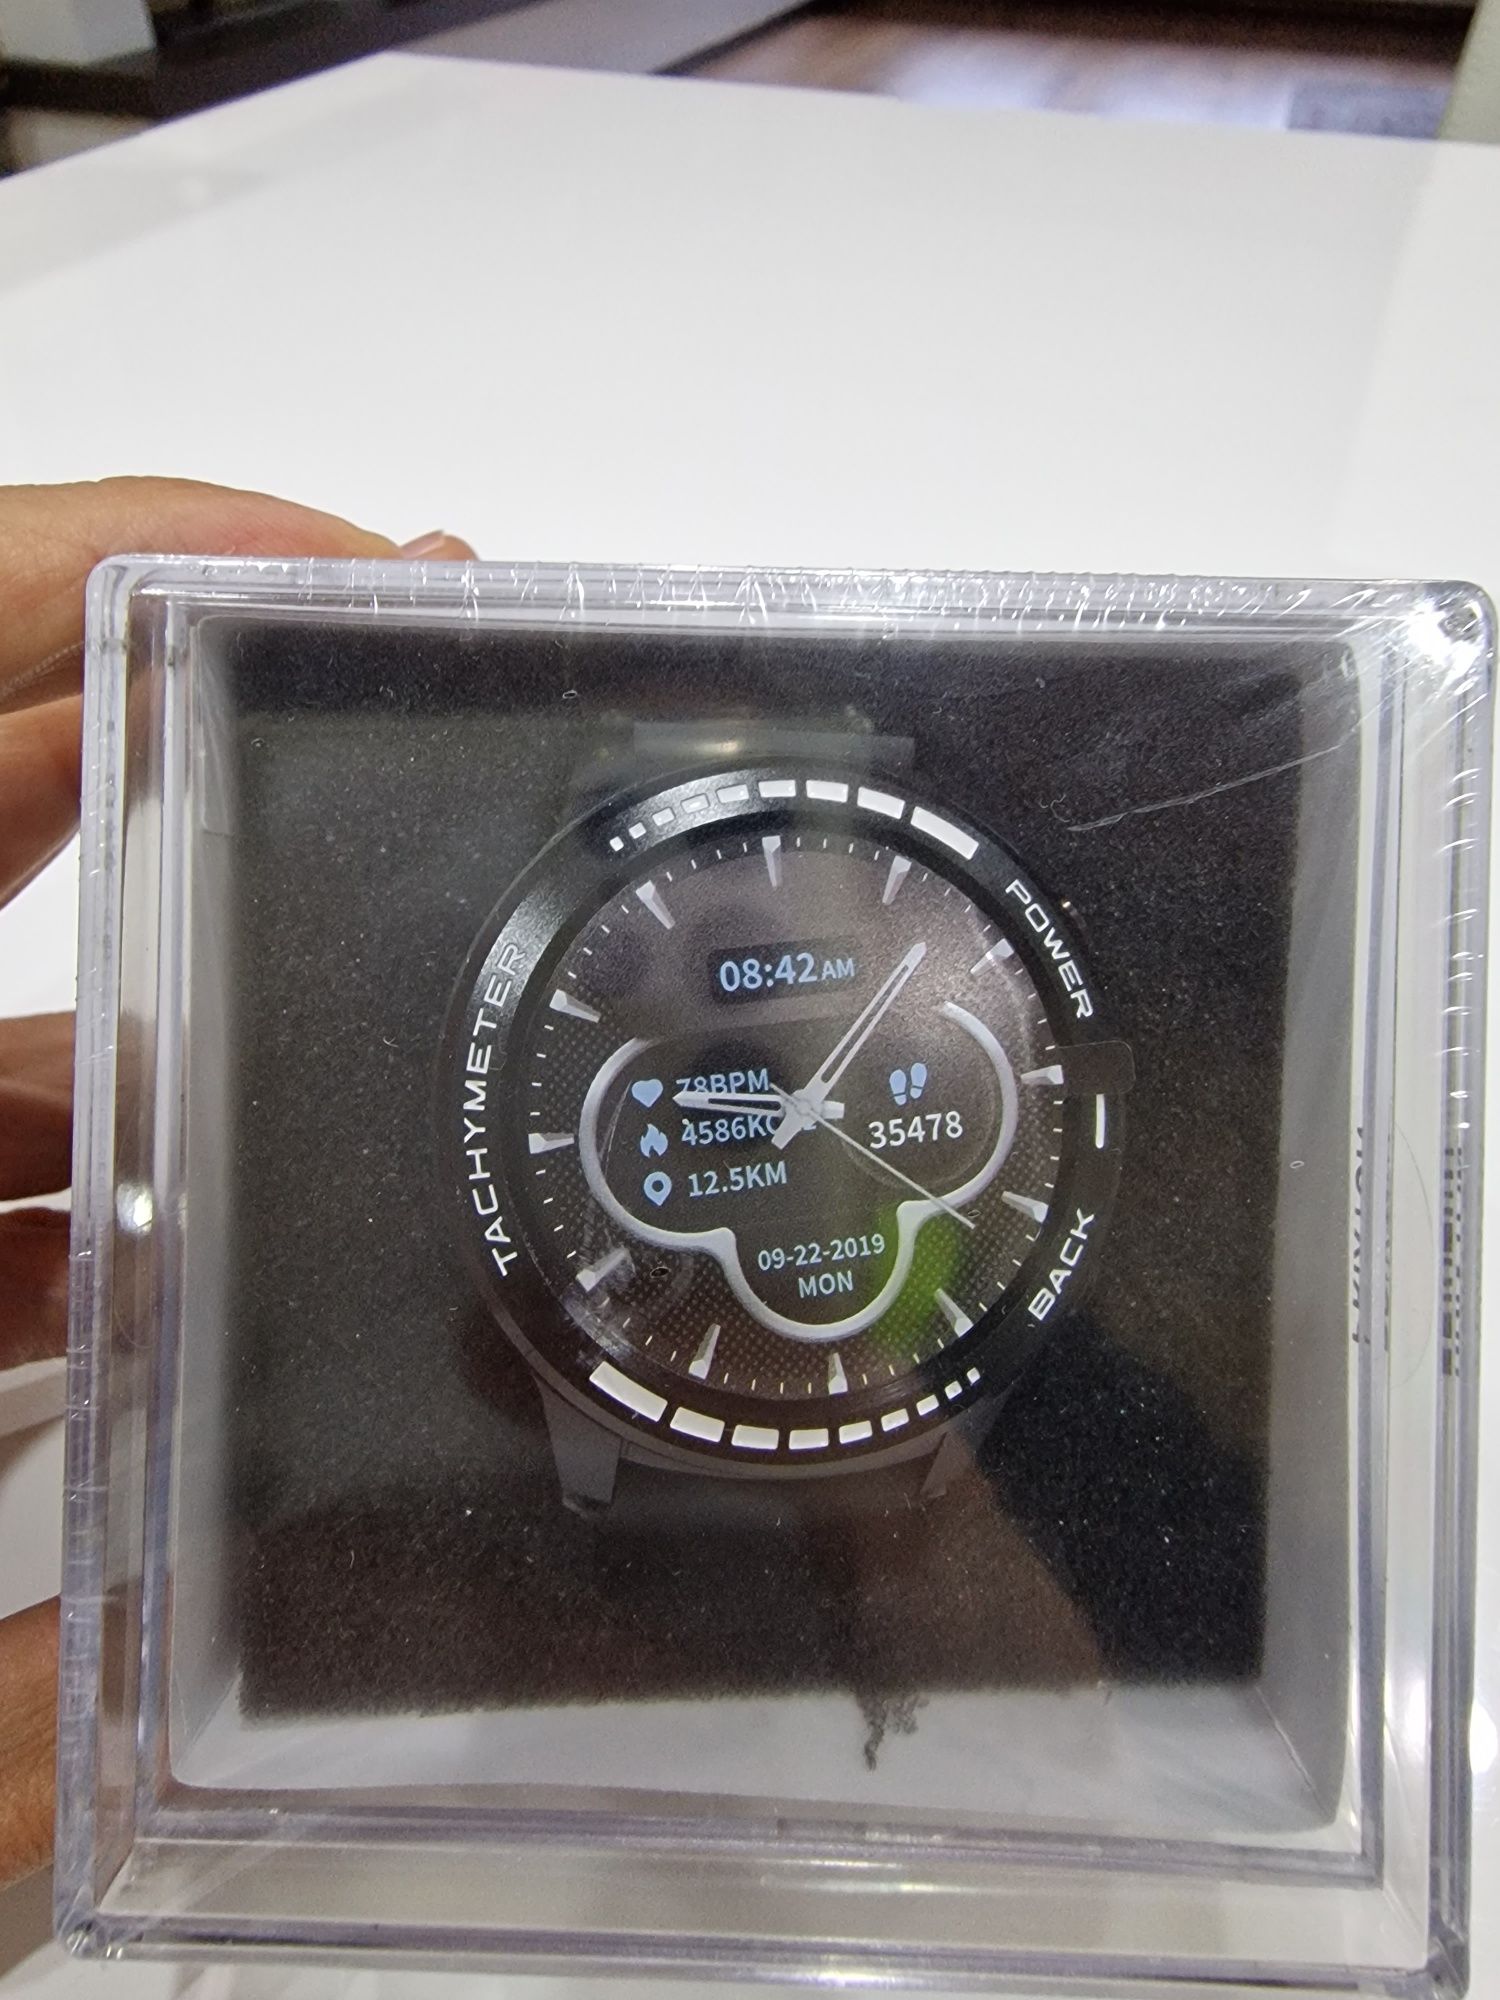 Prixton SW37 Smartwatch GPS